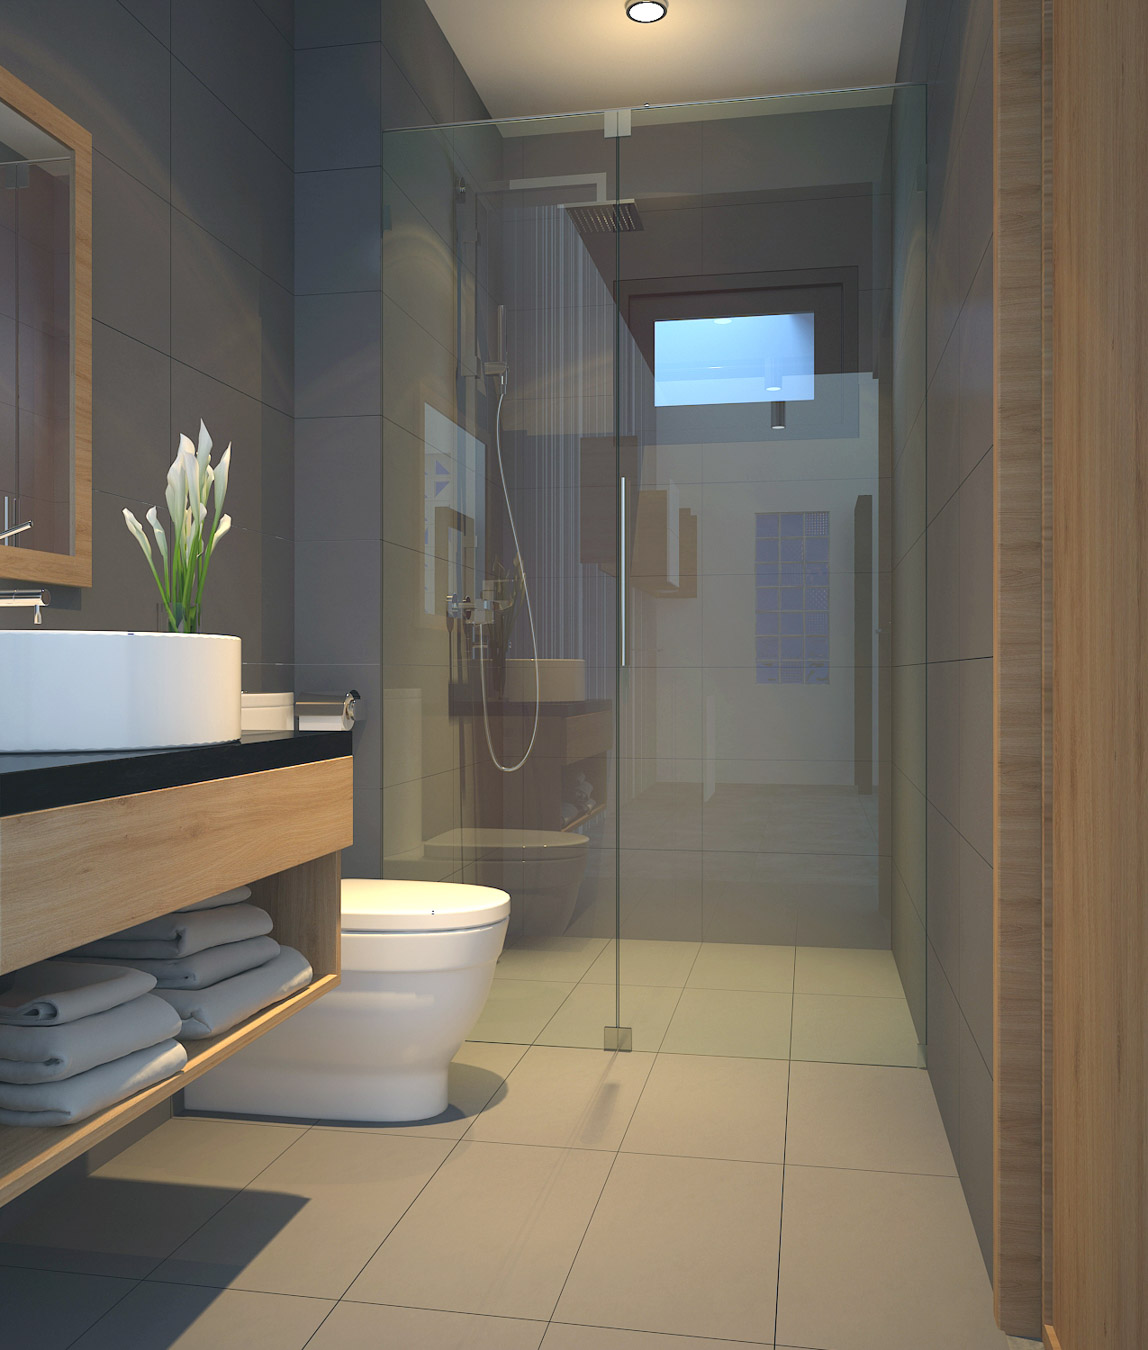 Phòng tắm trong căn hộ được thiết kế hiện đại và tiện ích, mang lại sự thoải mái và tiện nghi. Với các trang thiết bị hiện đại và không gian sạch sẽ, phòng tắm trở thành một nơi để rũ bỏ những phiền muộn và thư giãn.